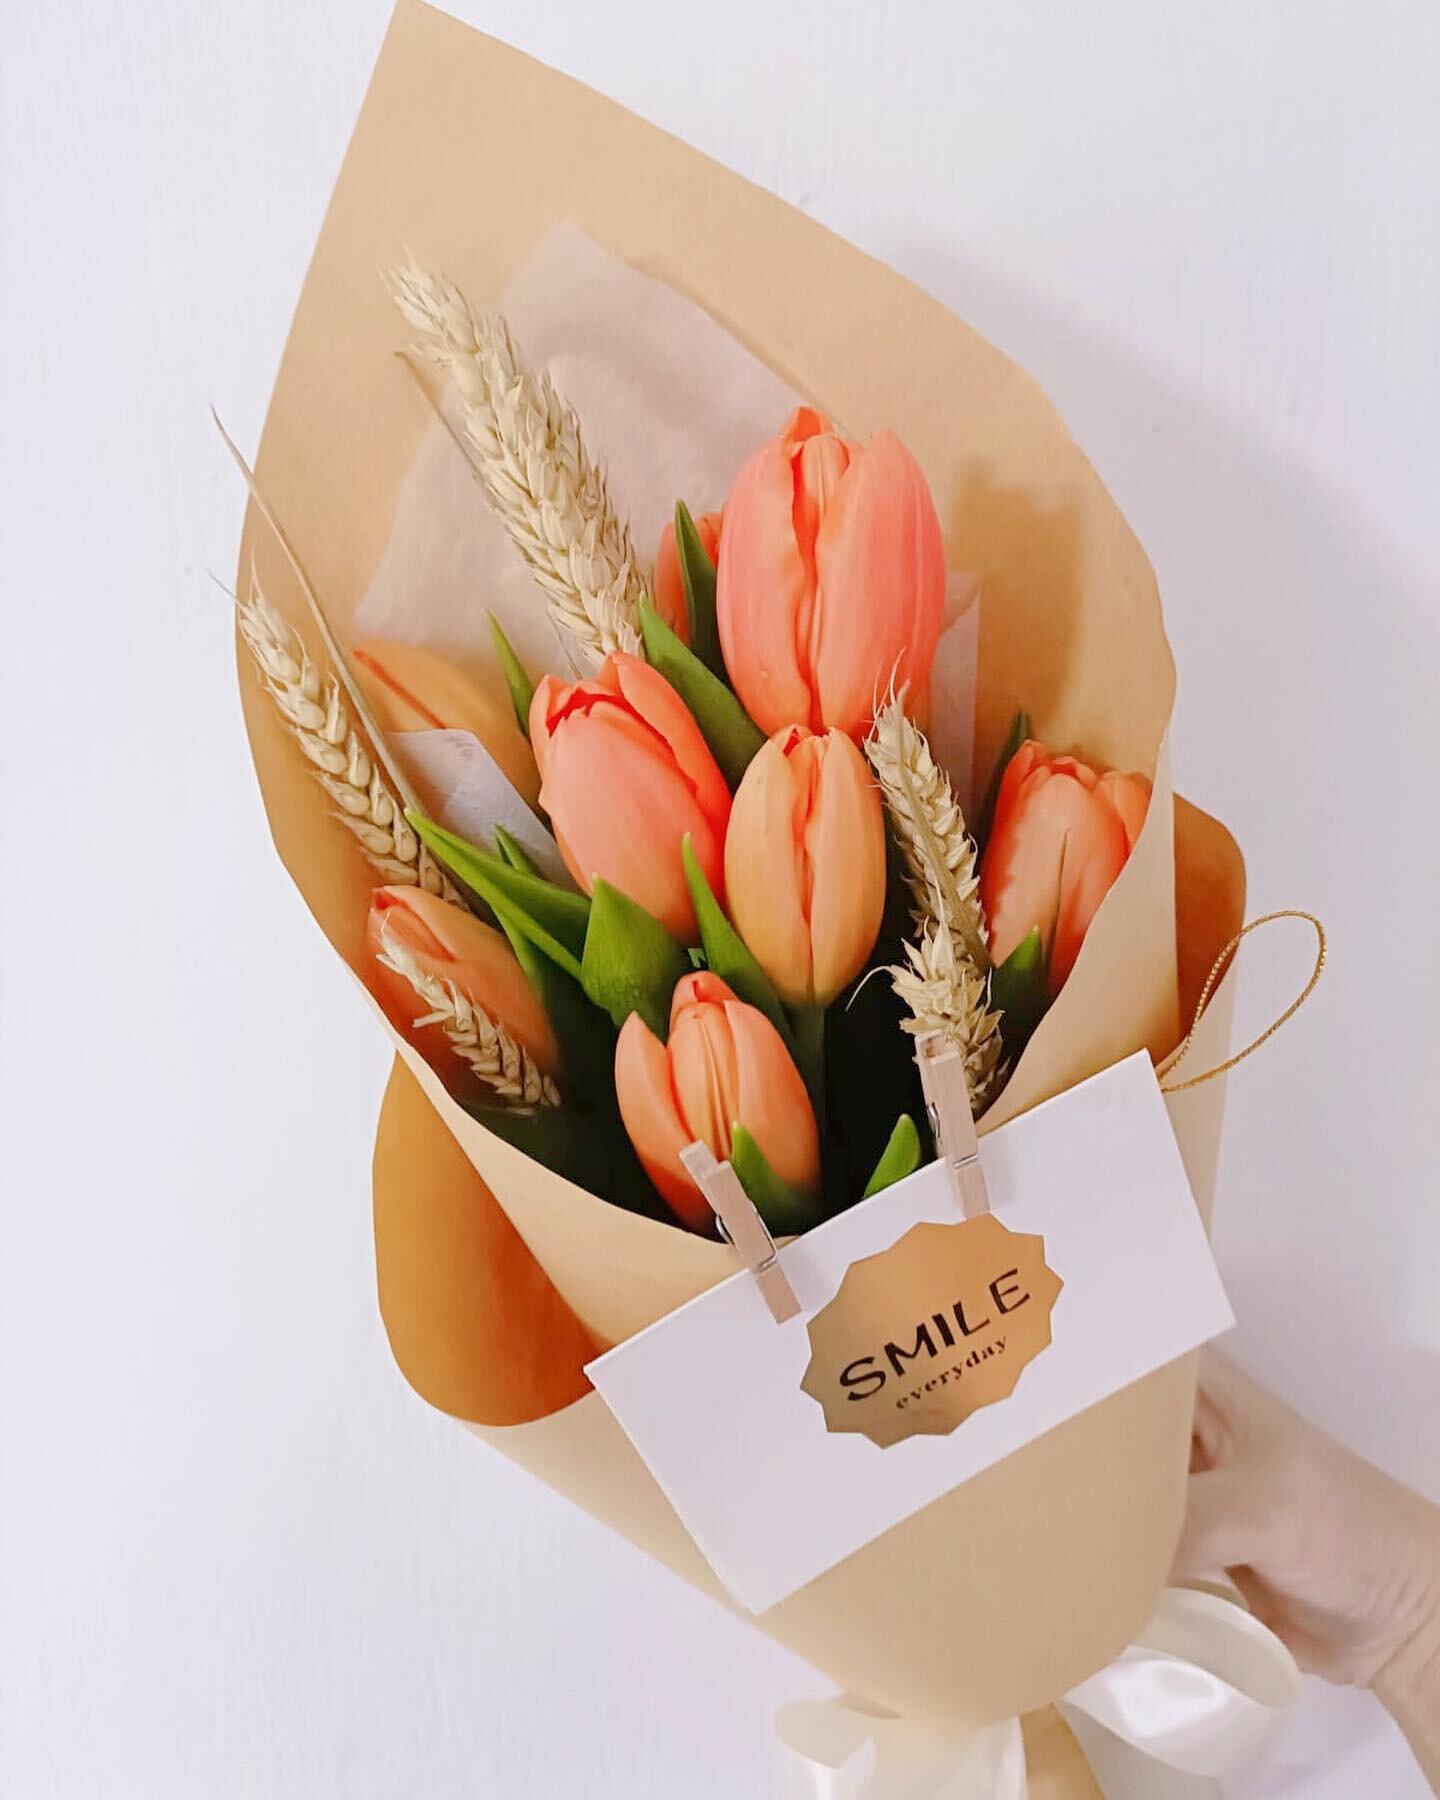 Happy National Day🌷🇸🇬
Shop now at moodfleur.com/shop

#moodfleur #tulipsbouquet